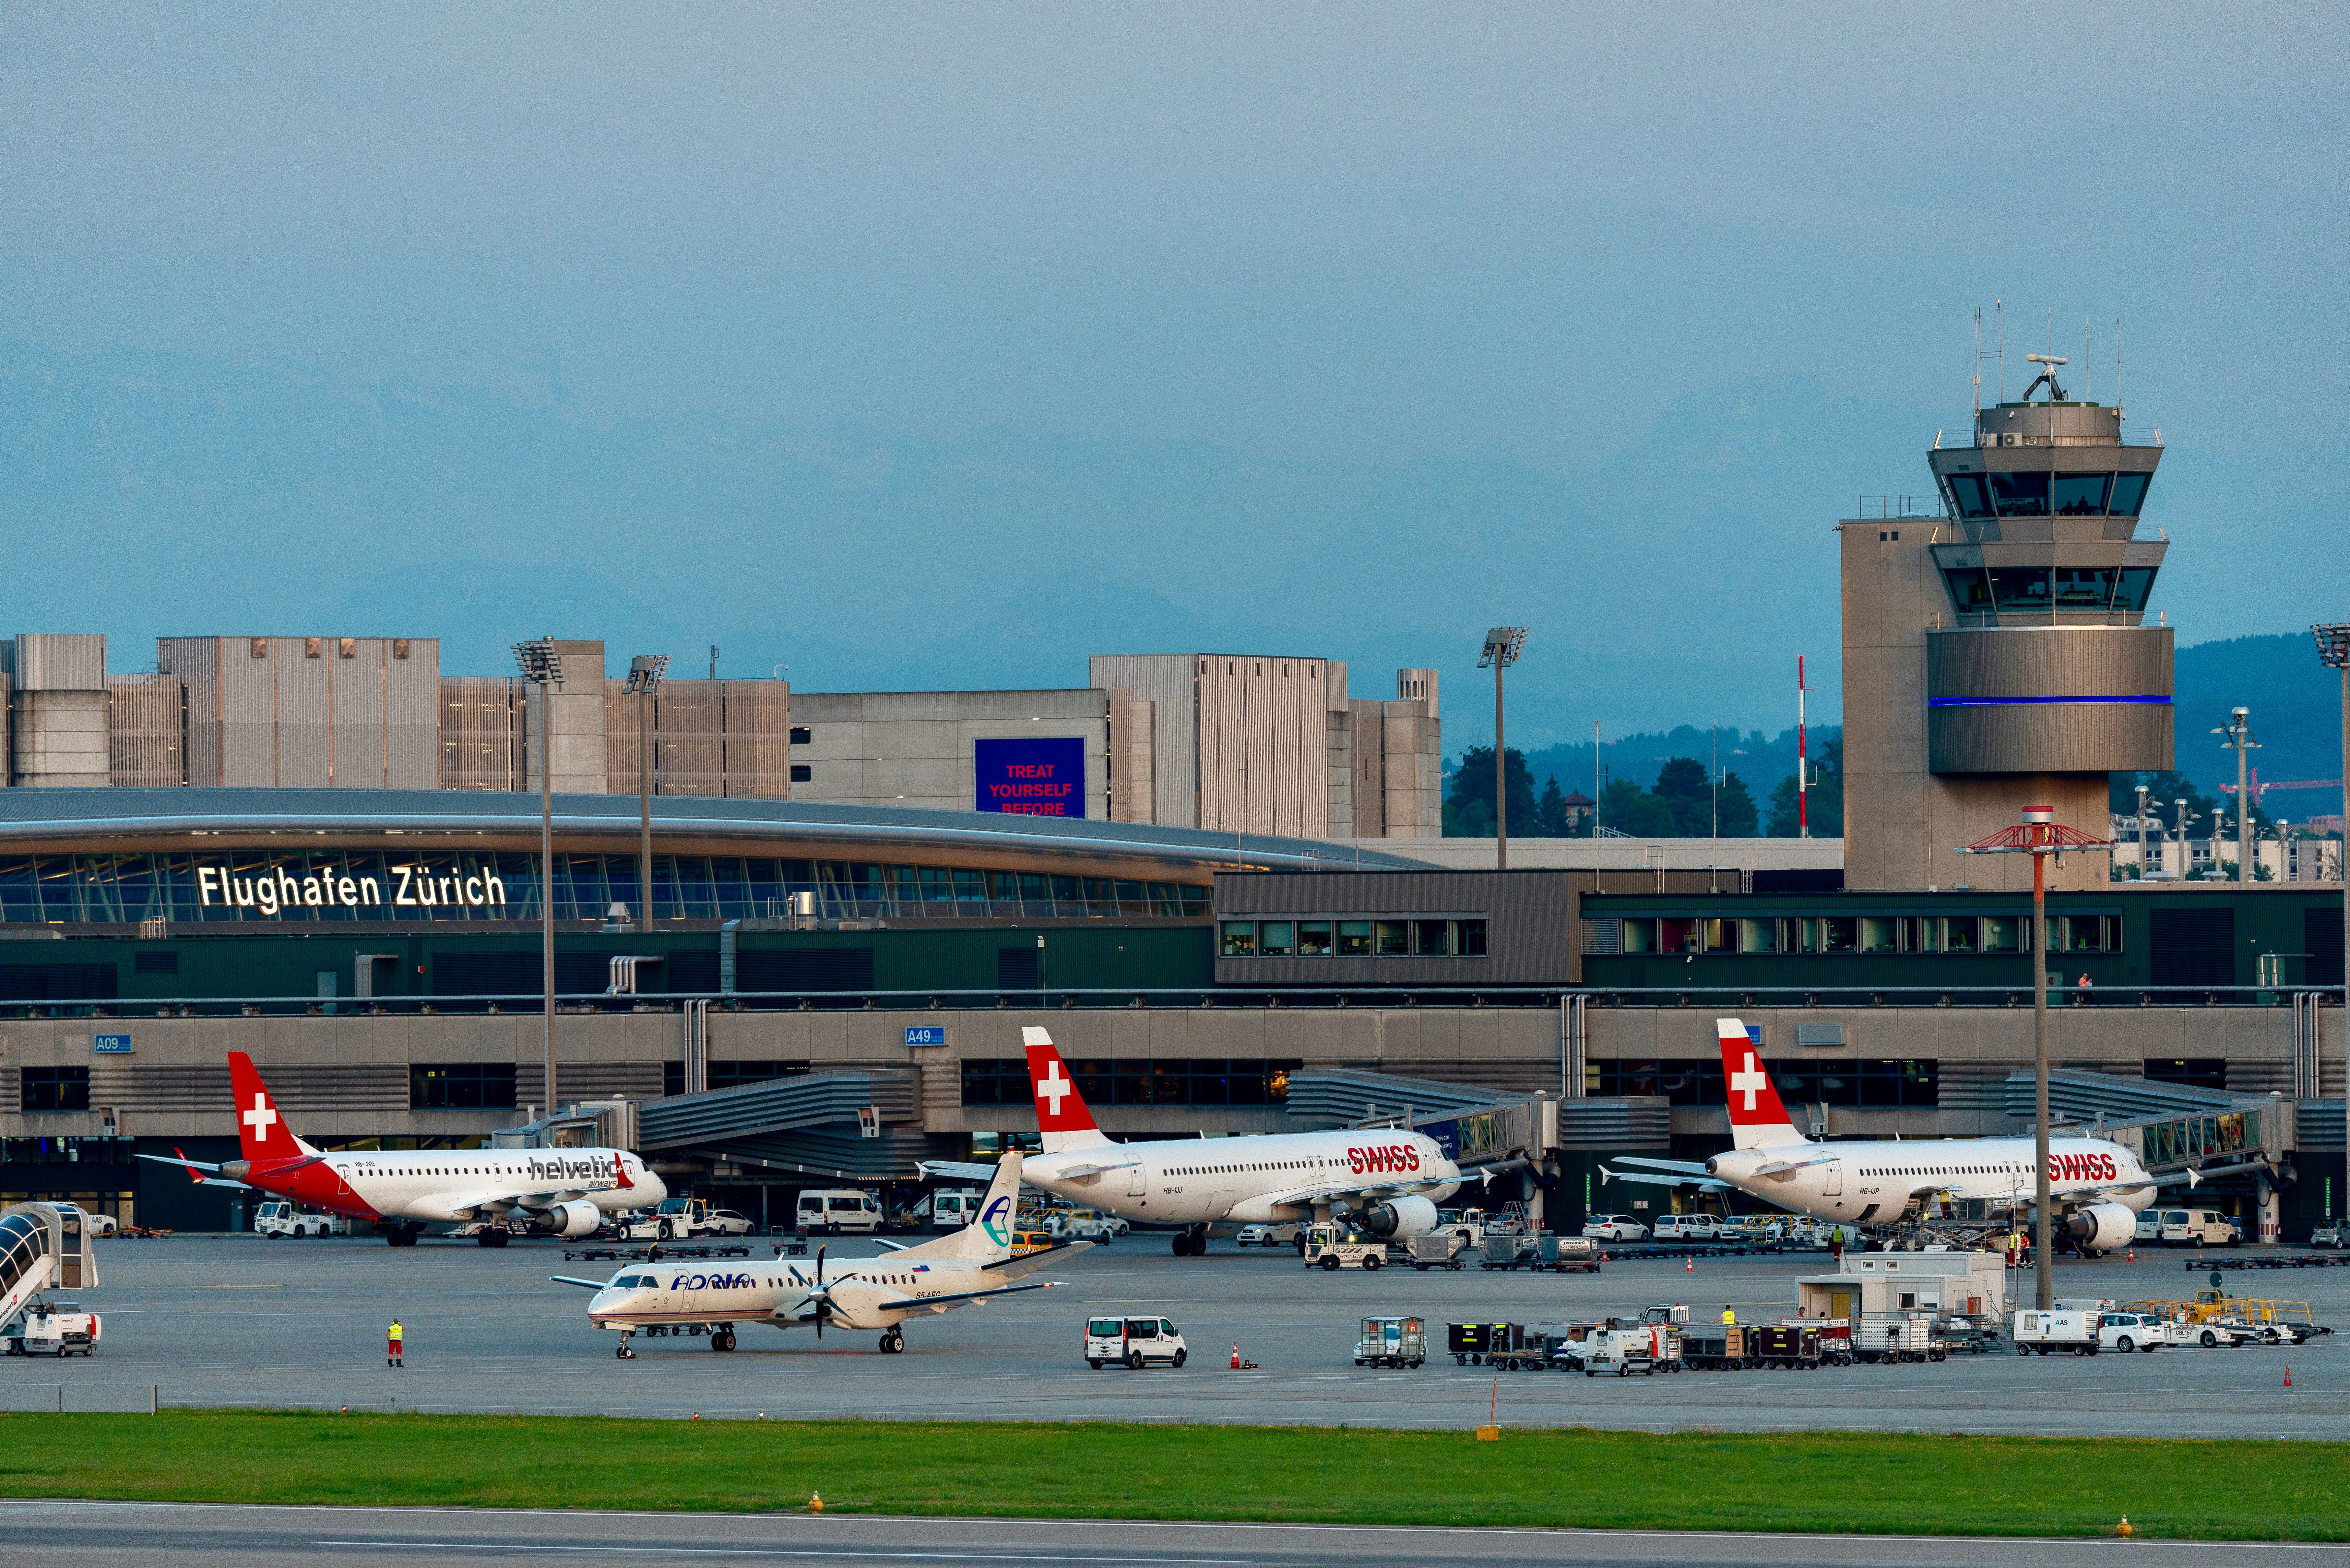 SWISS airplanes at Zurich Airport